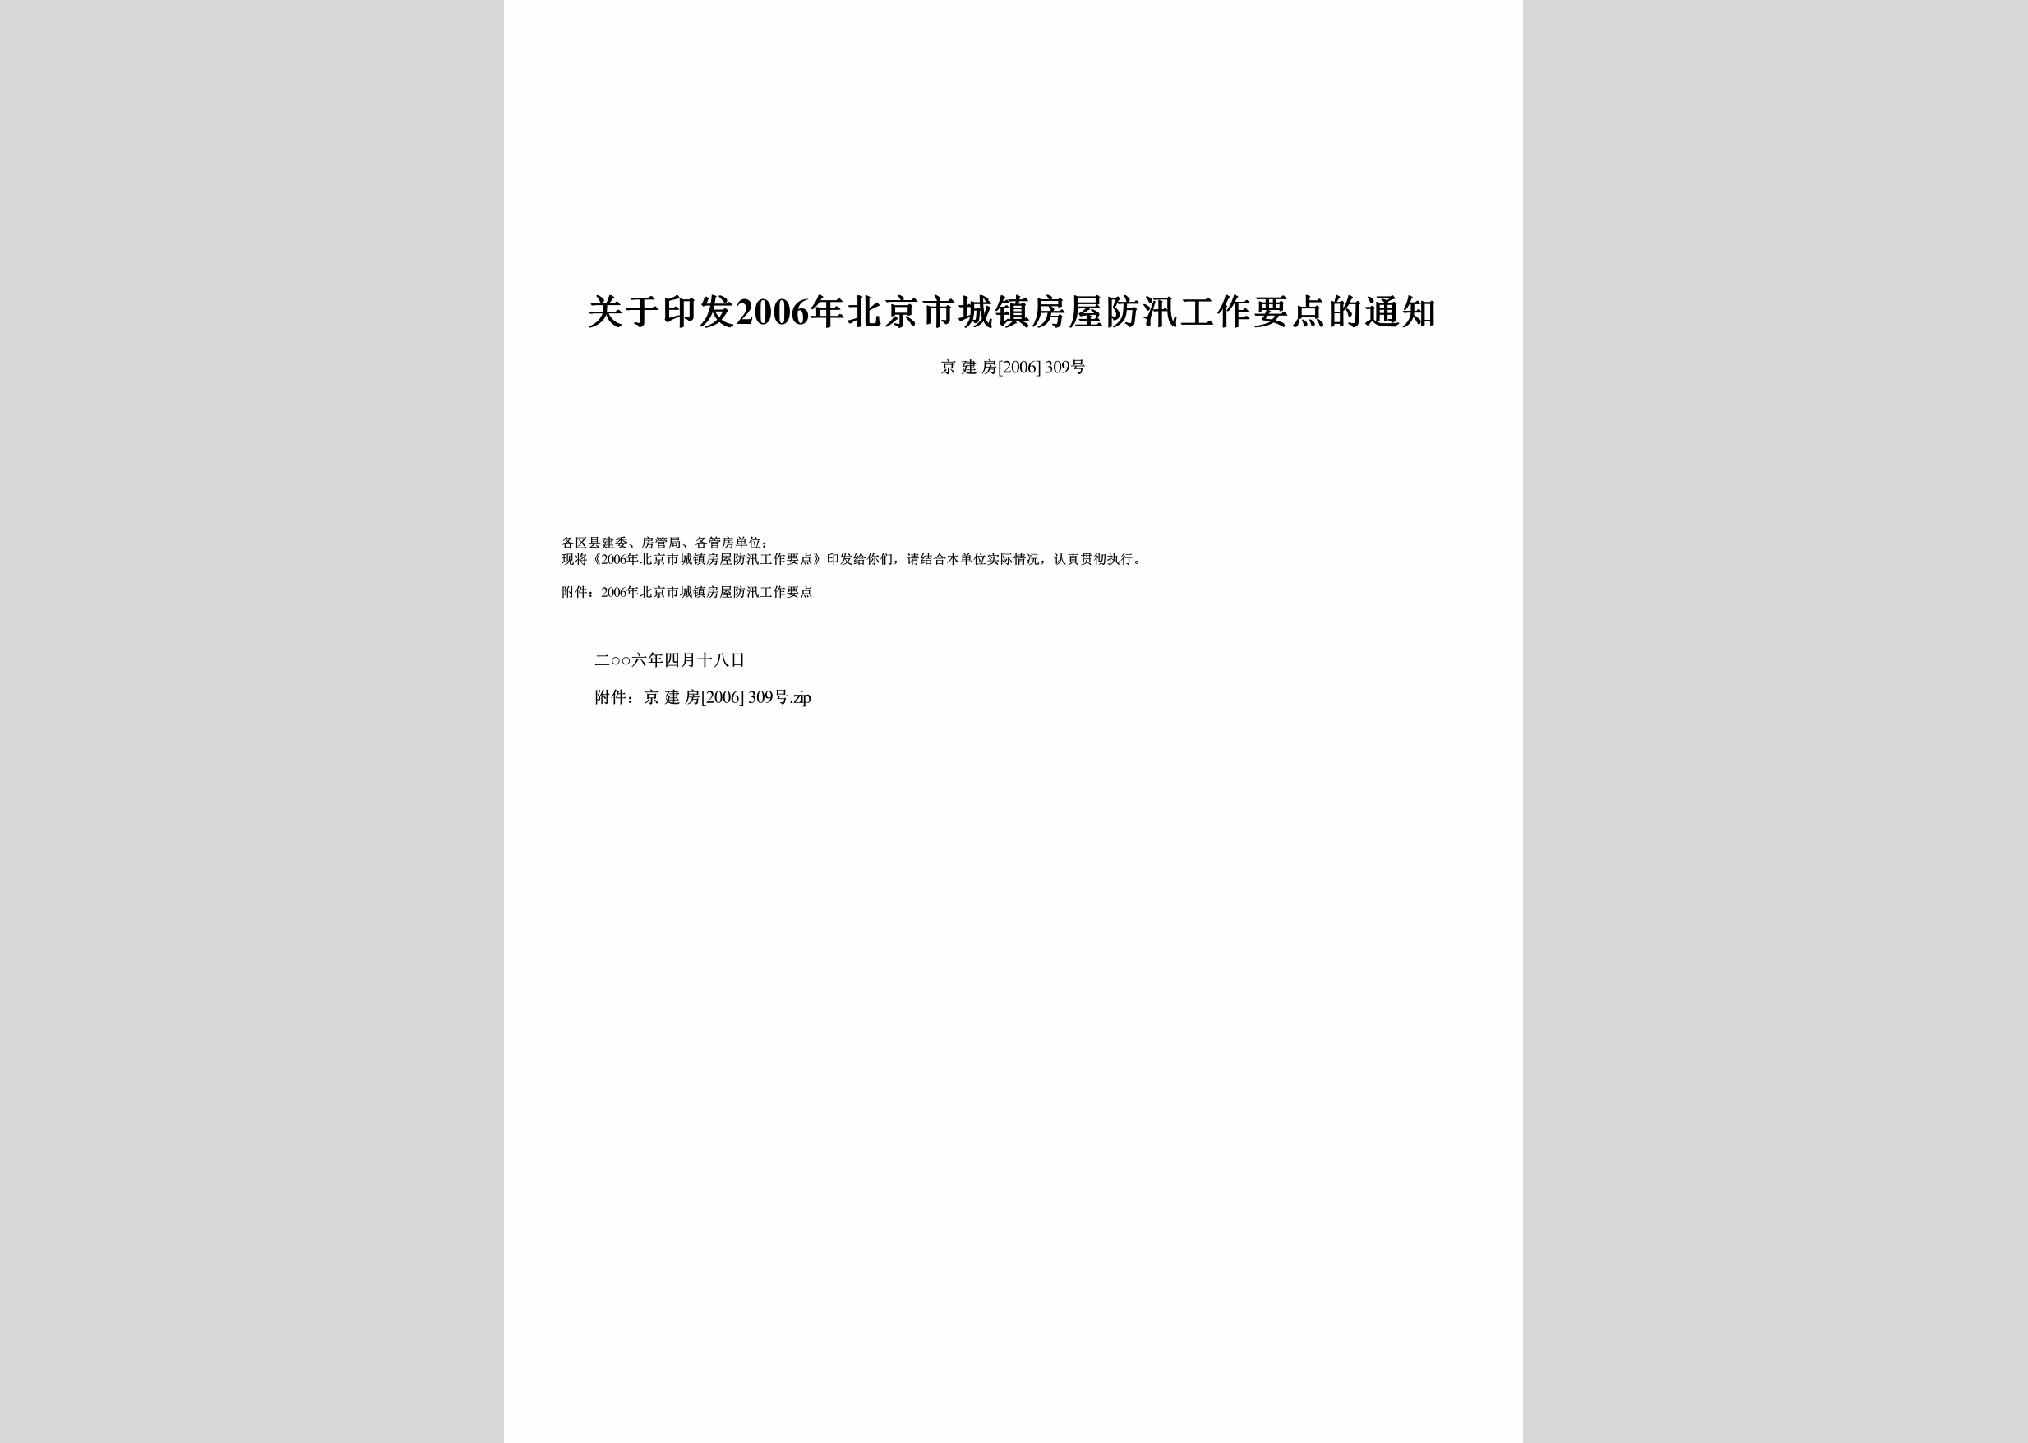 京建房[2006]309号：关于印发2006年北京市城镇房屋防汛工作要点的通知